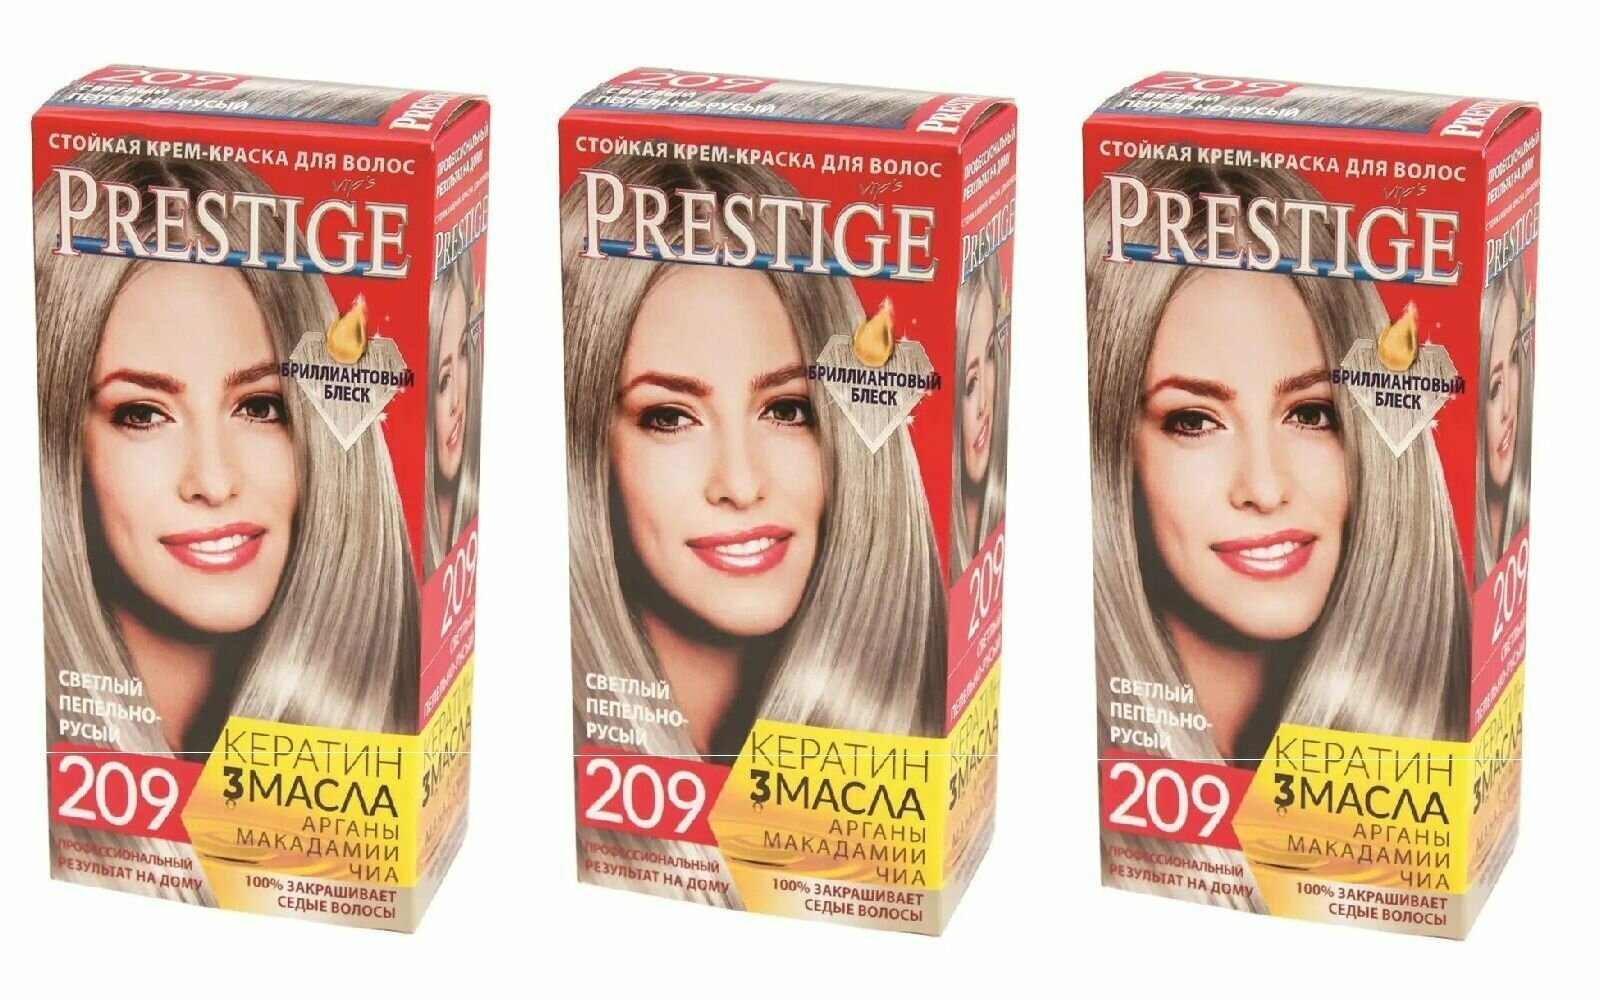 VIP'S Prestige Краска для волос 209 Светлый пепельно-русый, 100 мл, 3 штуки